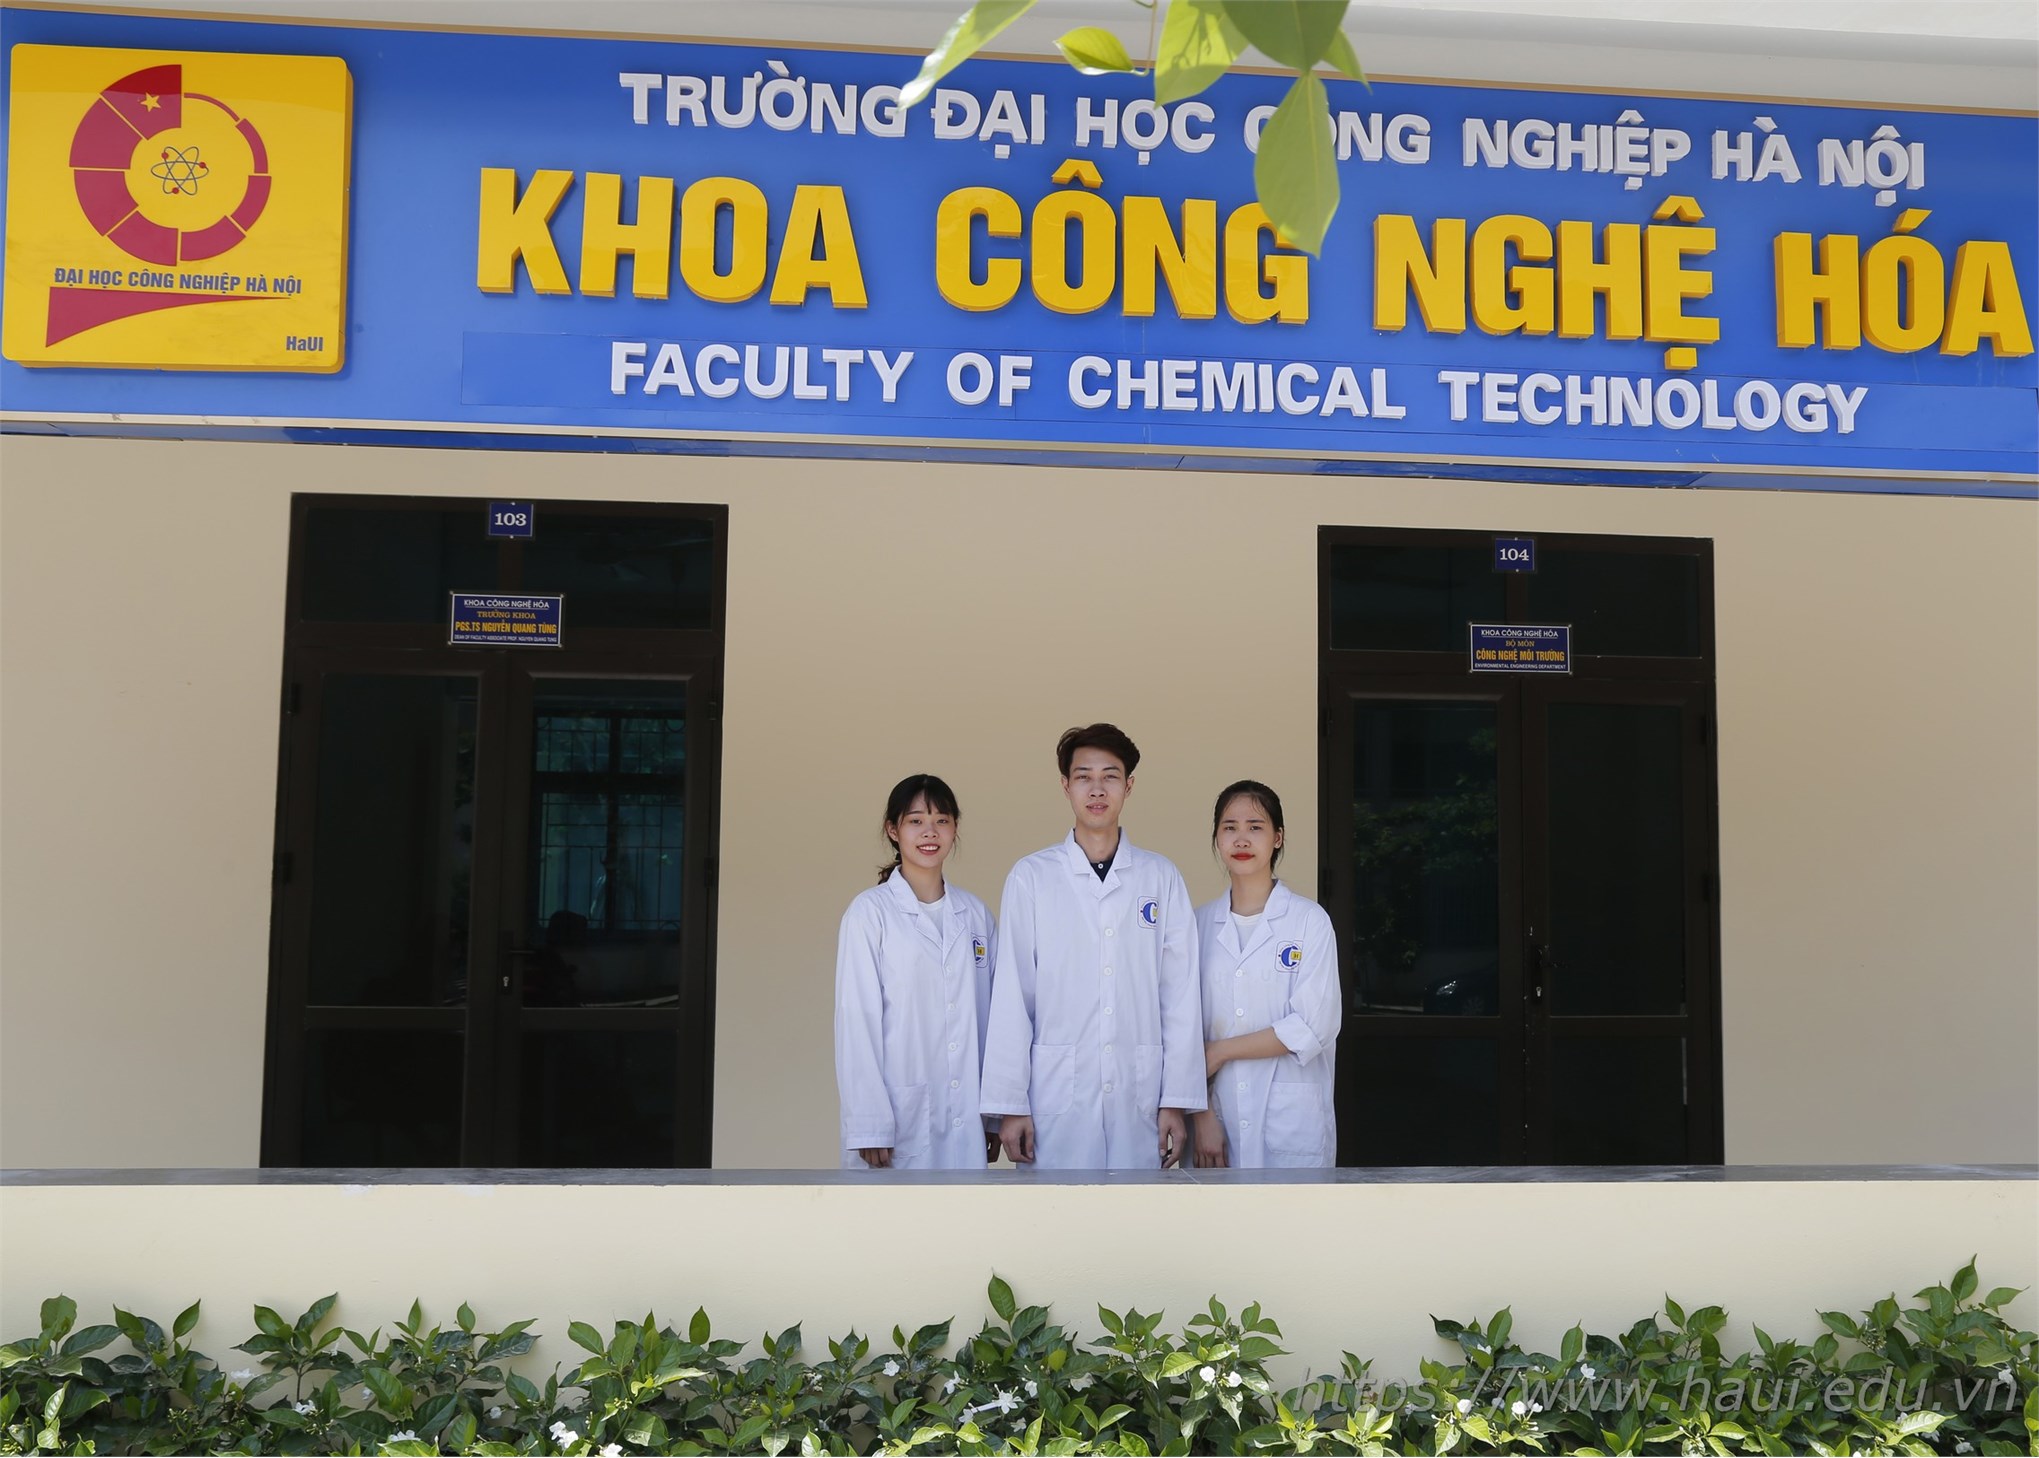 Sinh viên khoa Công nghệ Hóa, đại học công nghiệp Hà Nội với nghiên cứu khoa học